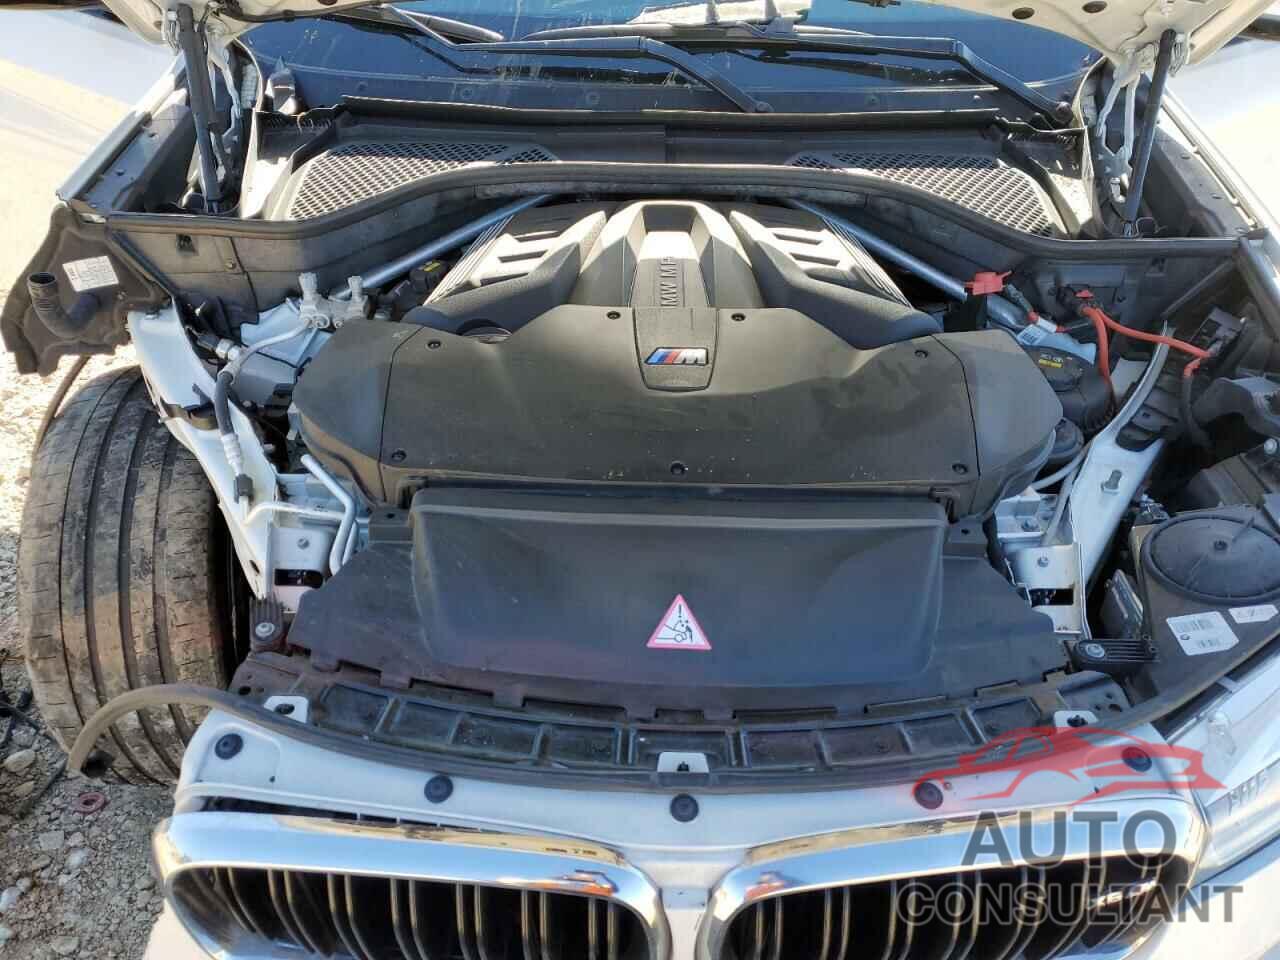 BMW X6 2018 - 5YMKW8C53J0Y74638